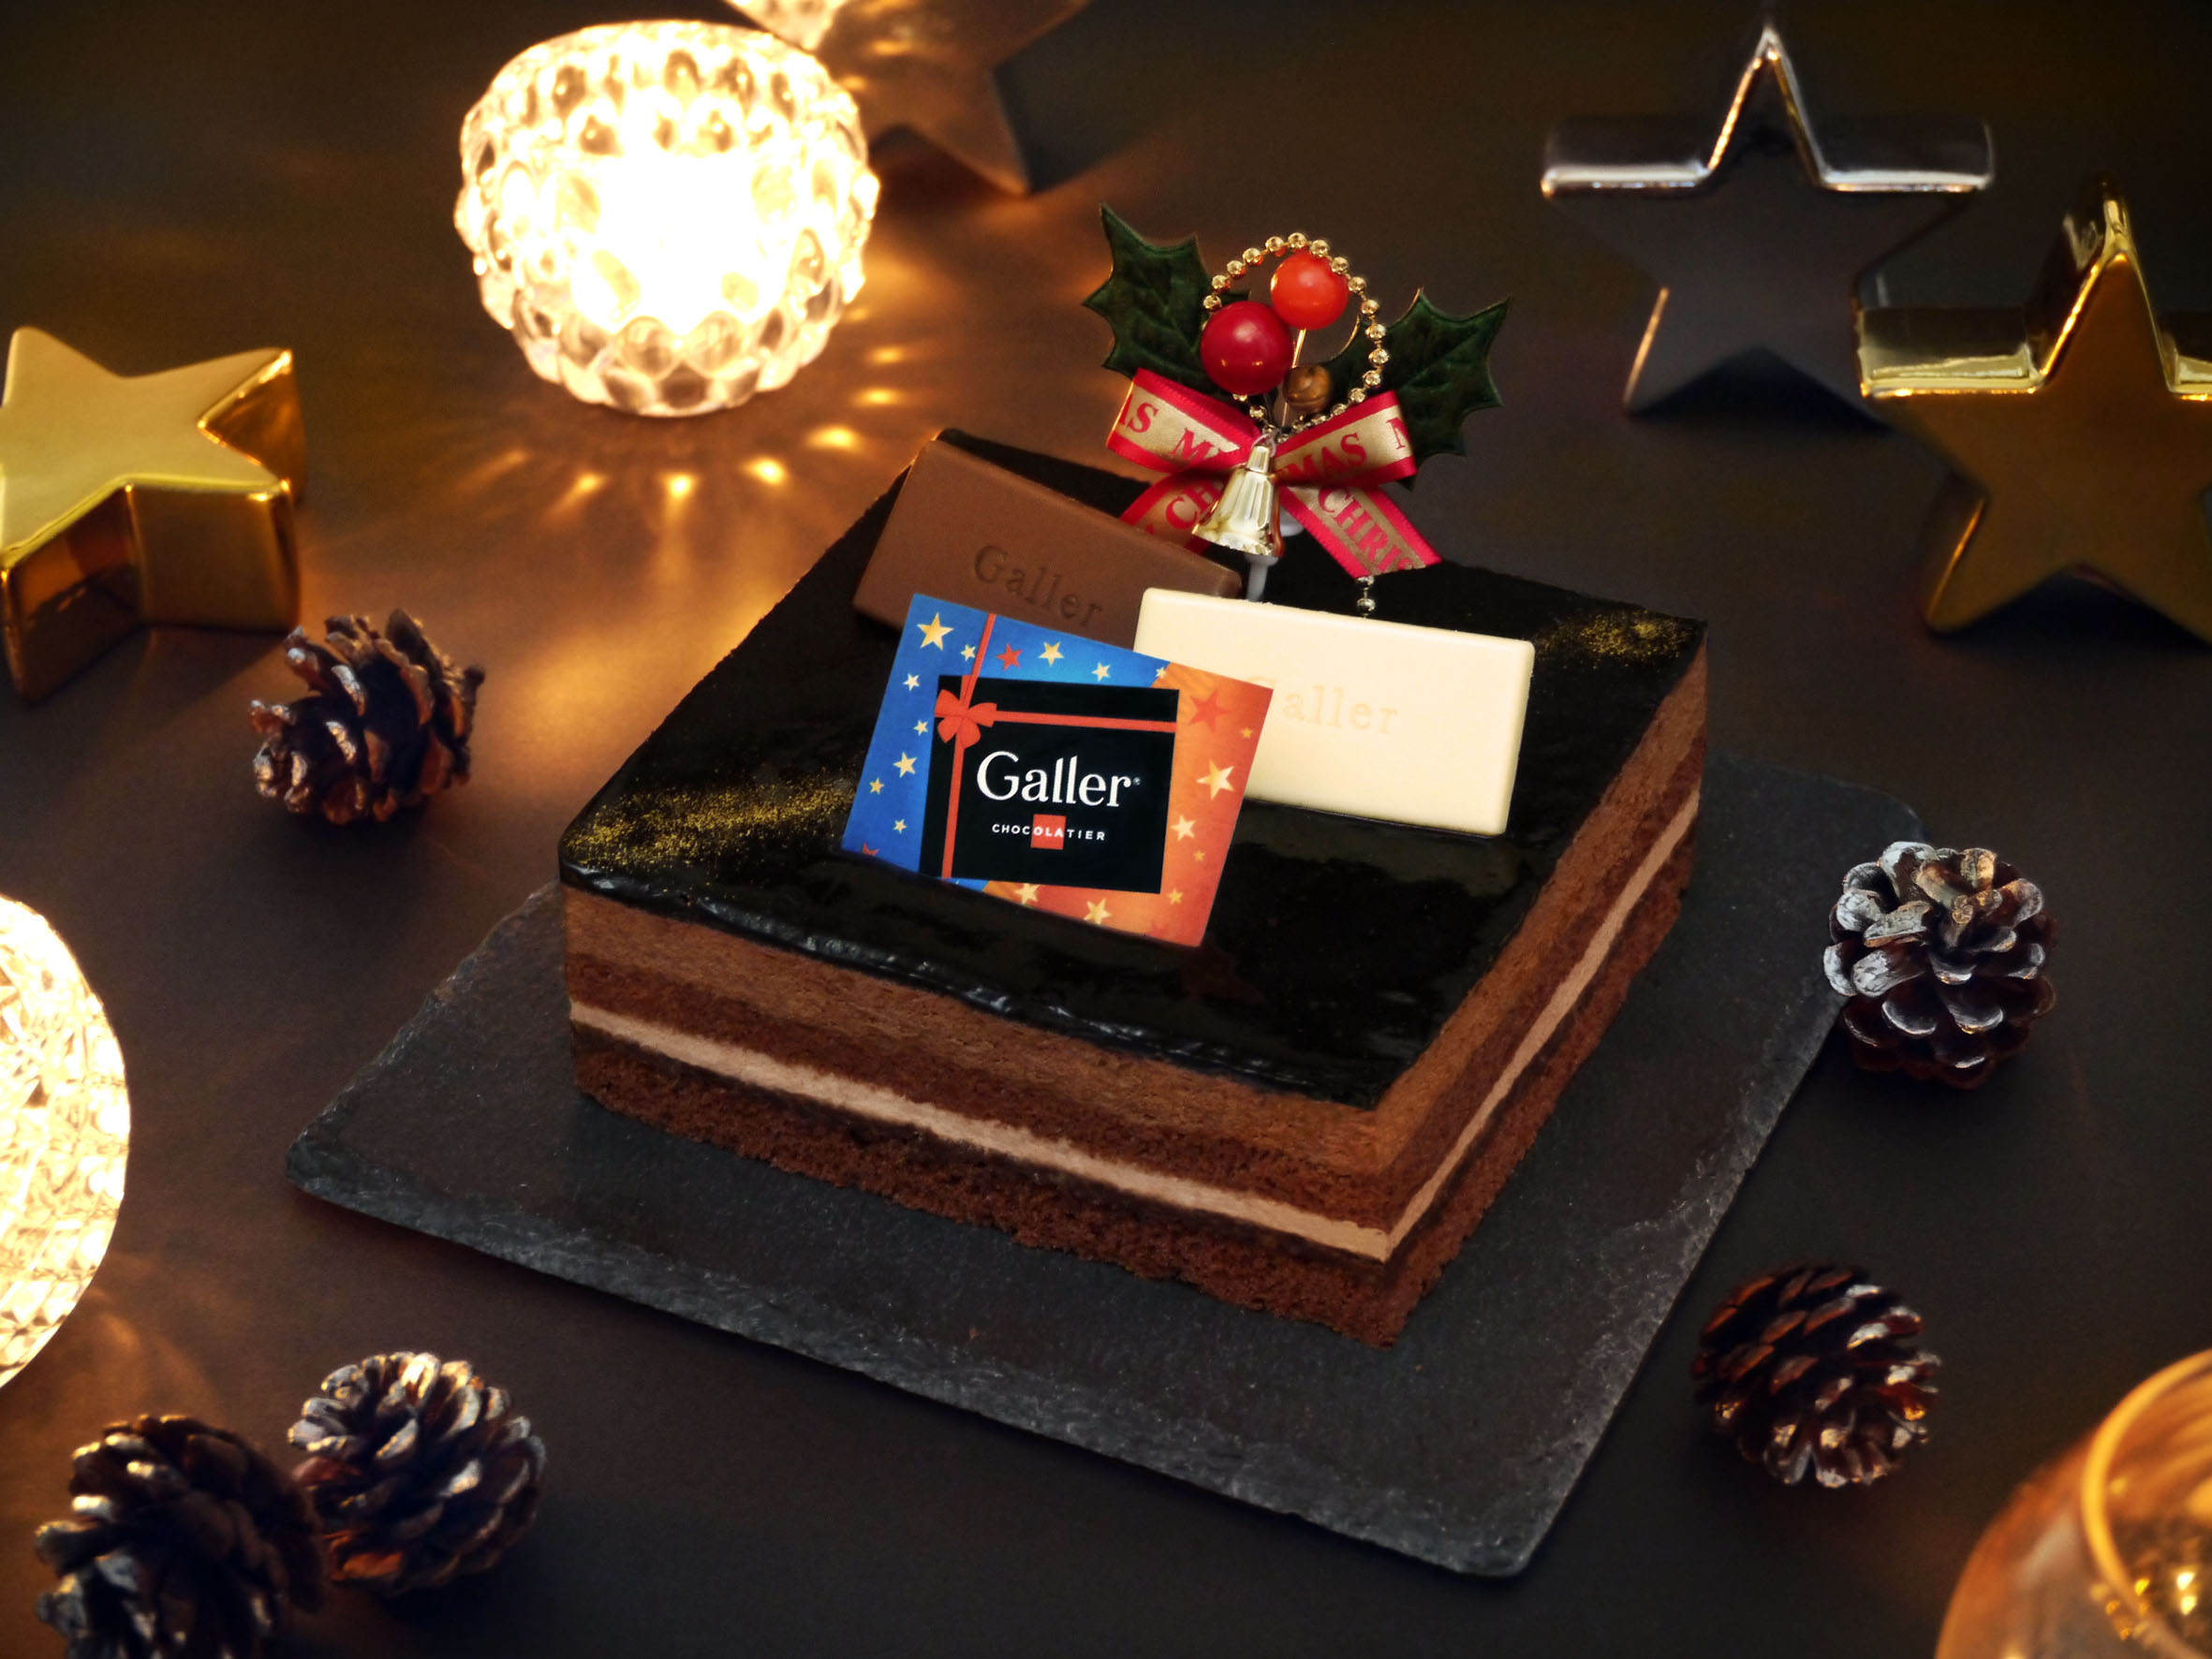 ベルギー王室御用達ブランド Galler ガレー 18年クリスマスケーキ 株式会社ガレー ジャパンのプレスリリース